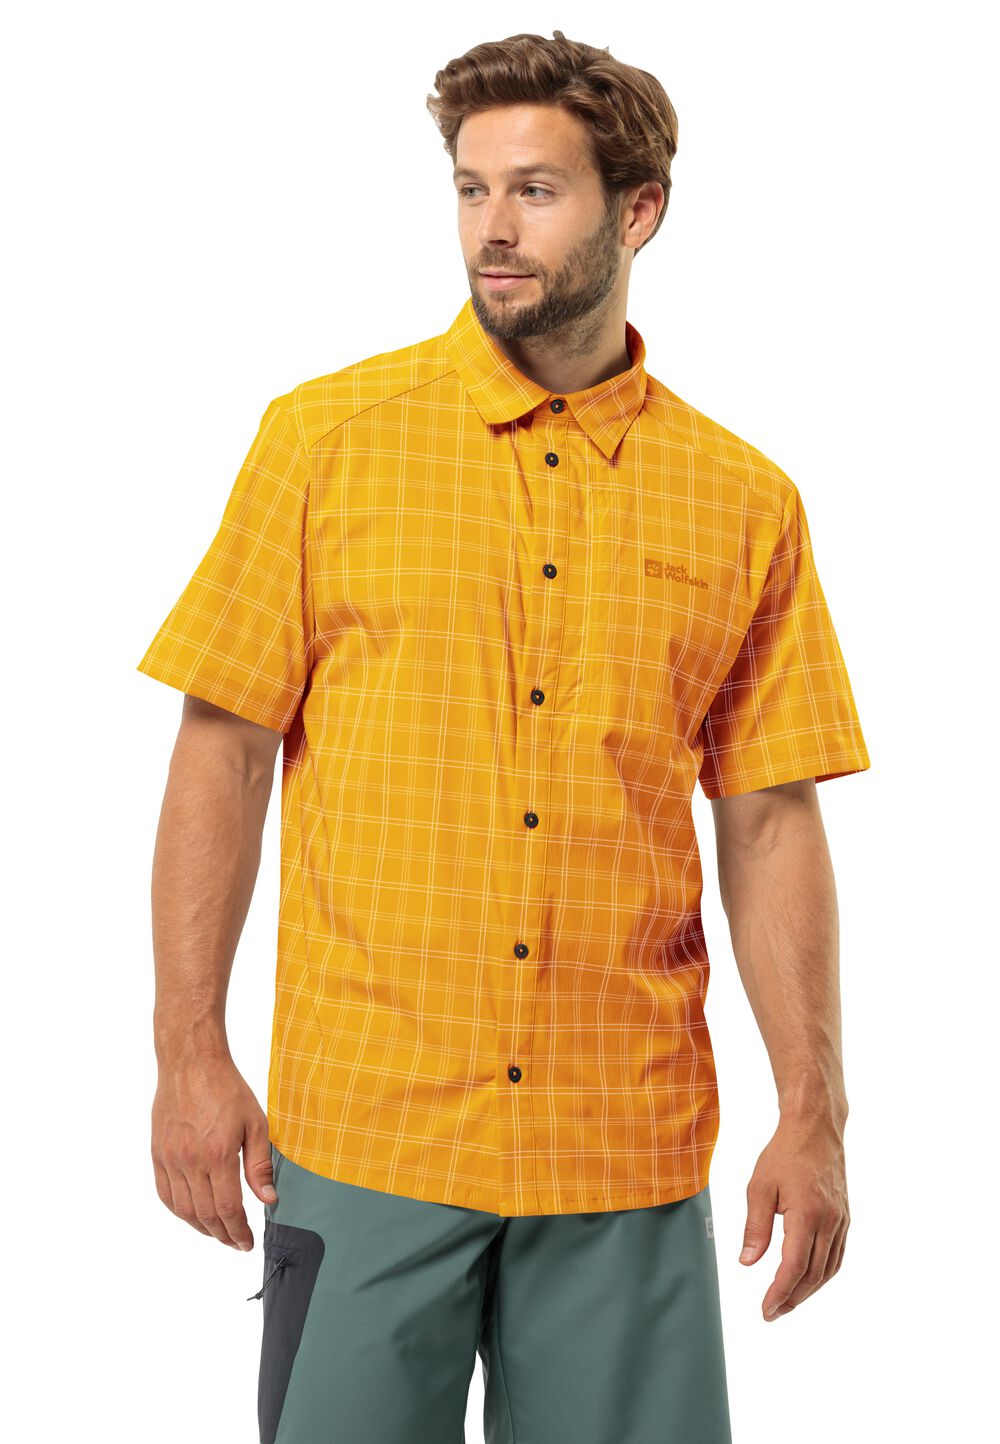 Jack Wolfskin Norbo S S Shirt Men Overhemd met korte mouwen Heren S bruin curry check